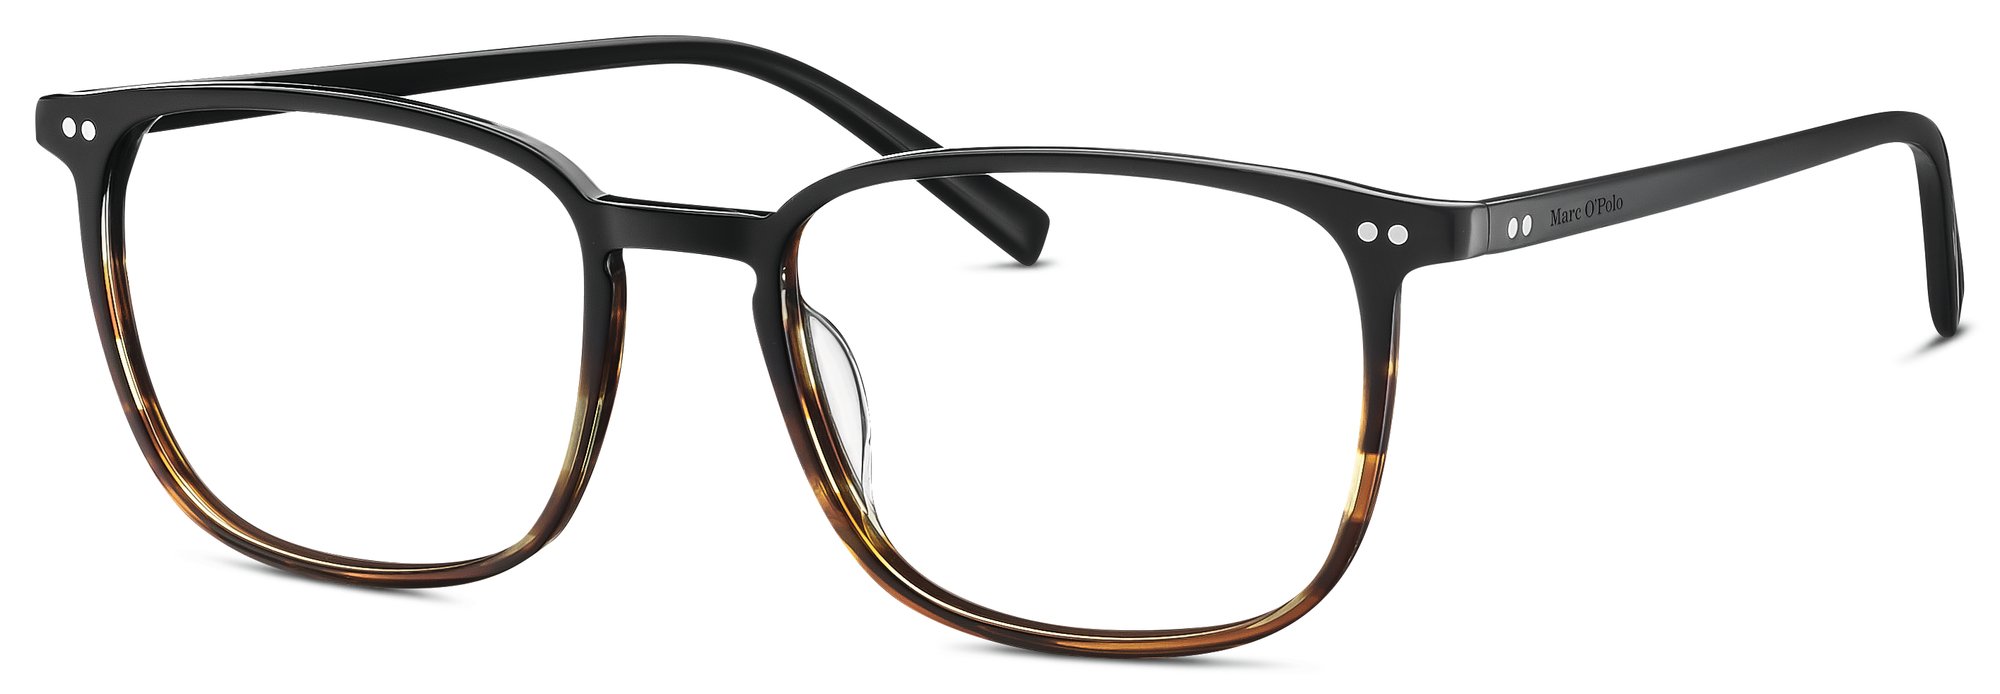 Das Bild zeigt die Korrektionsbrille 503155 60 von der Marke Marc O‘Polo in braun.